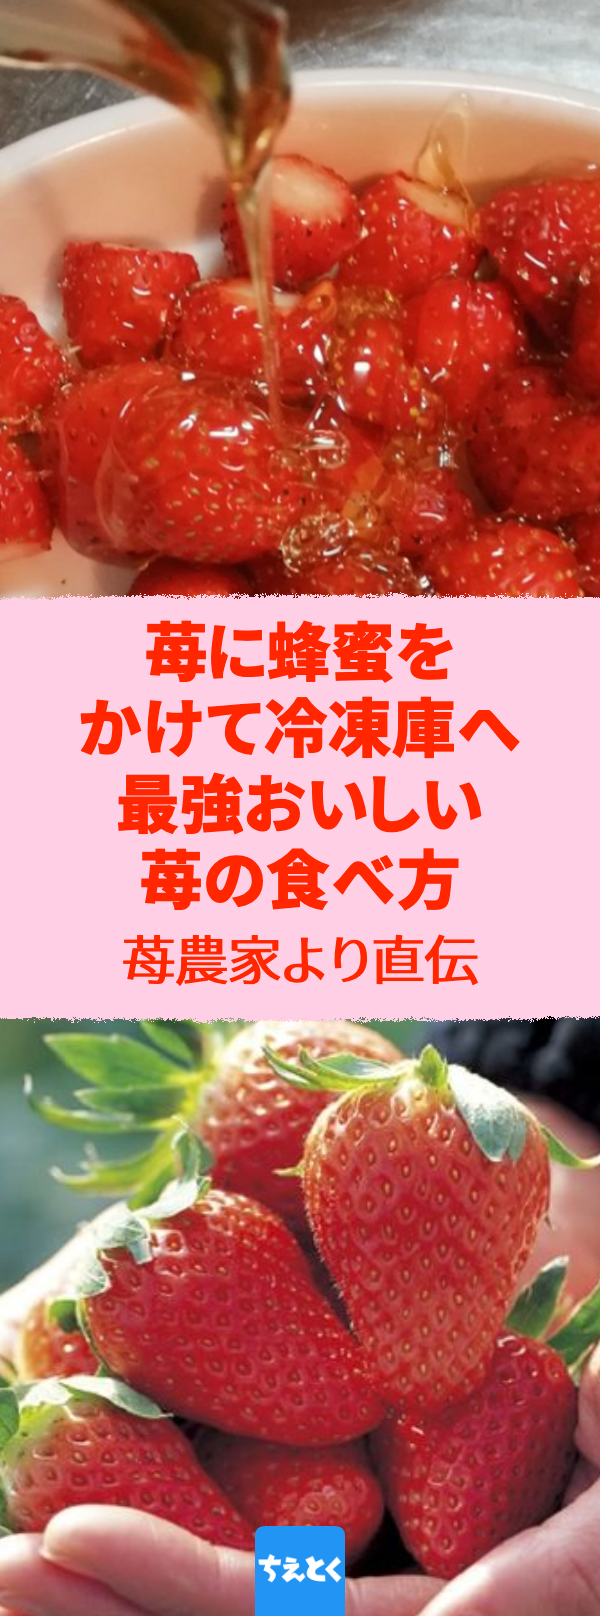 【超簡単】この方法なら苺をめちゃくちゃおいしく食べられる